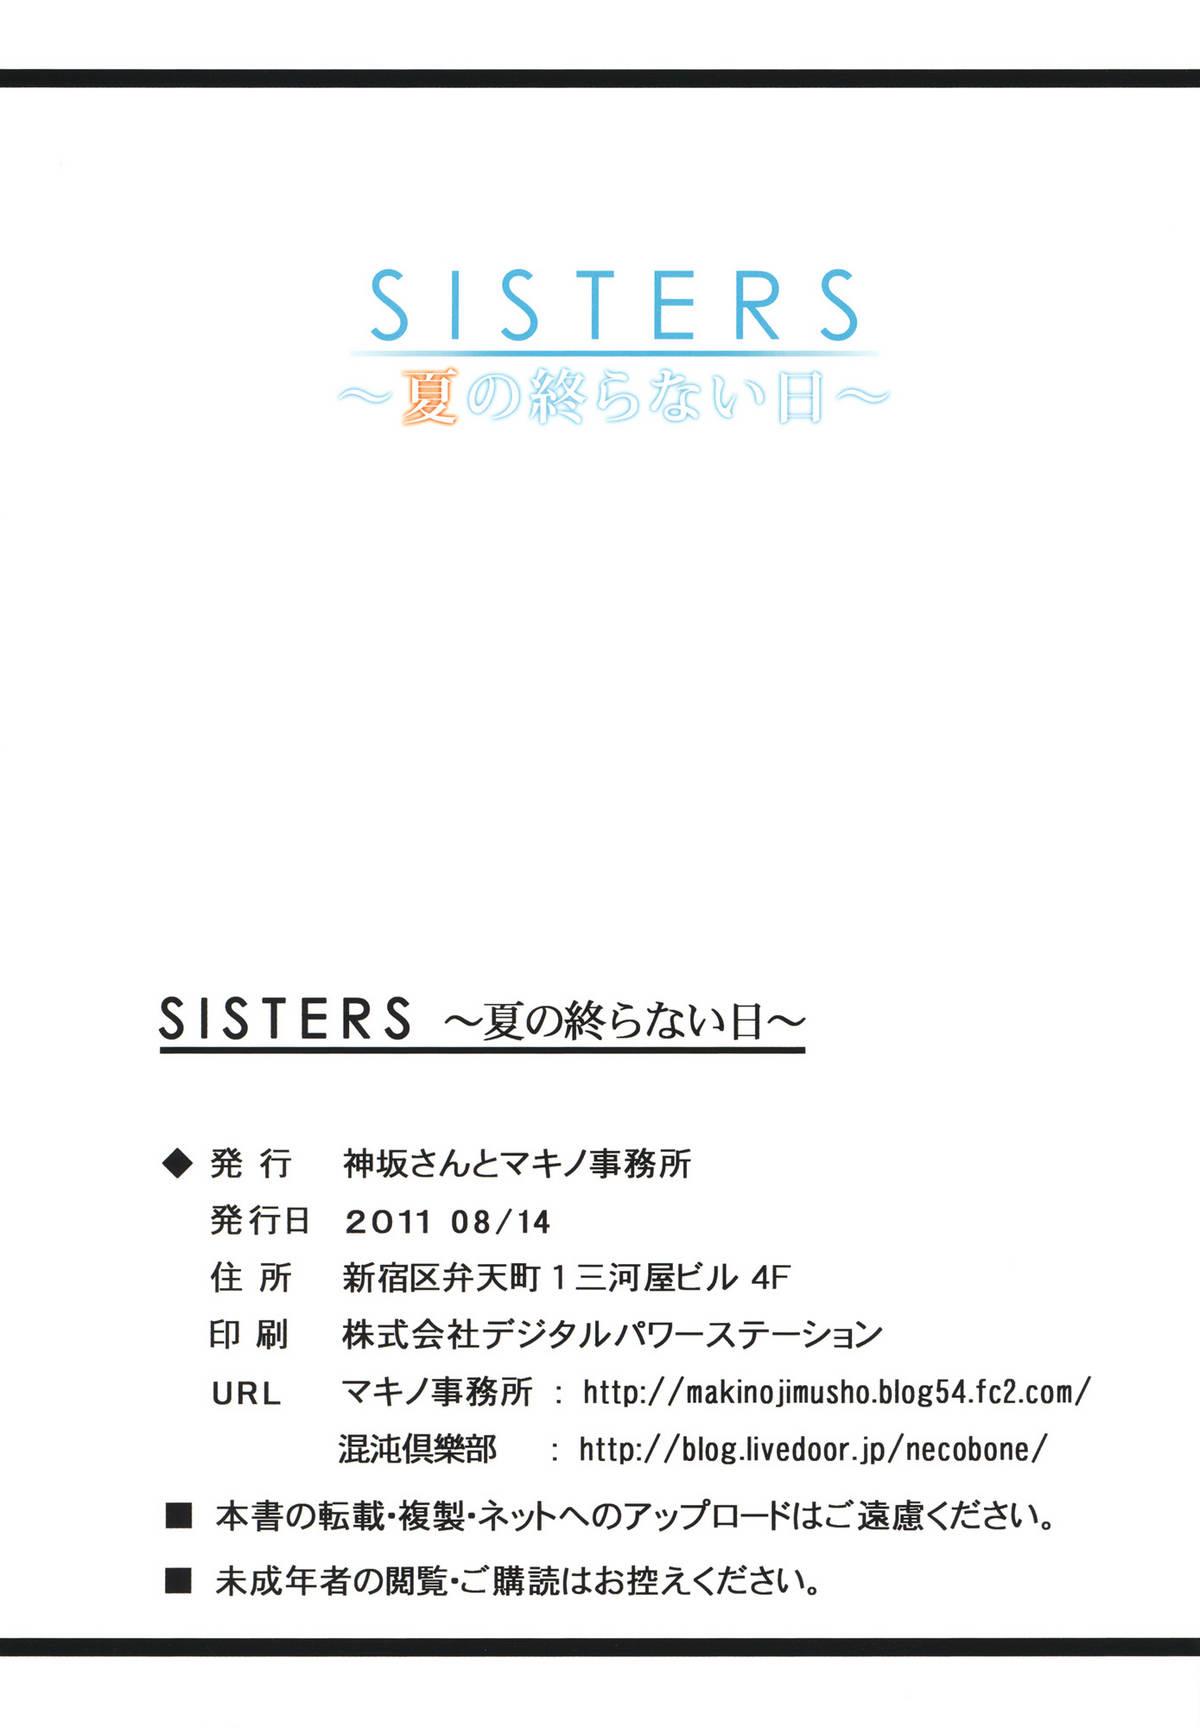 Rebolando SISTERS - Kakusareta Kioku, Natsu no Owaranai Hi - Sisters natsu no saigo no hi Flashing - Page 34